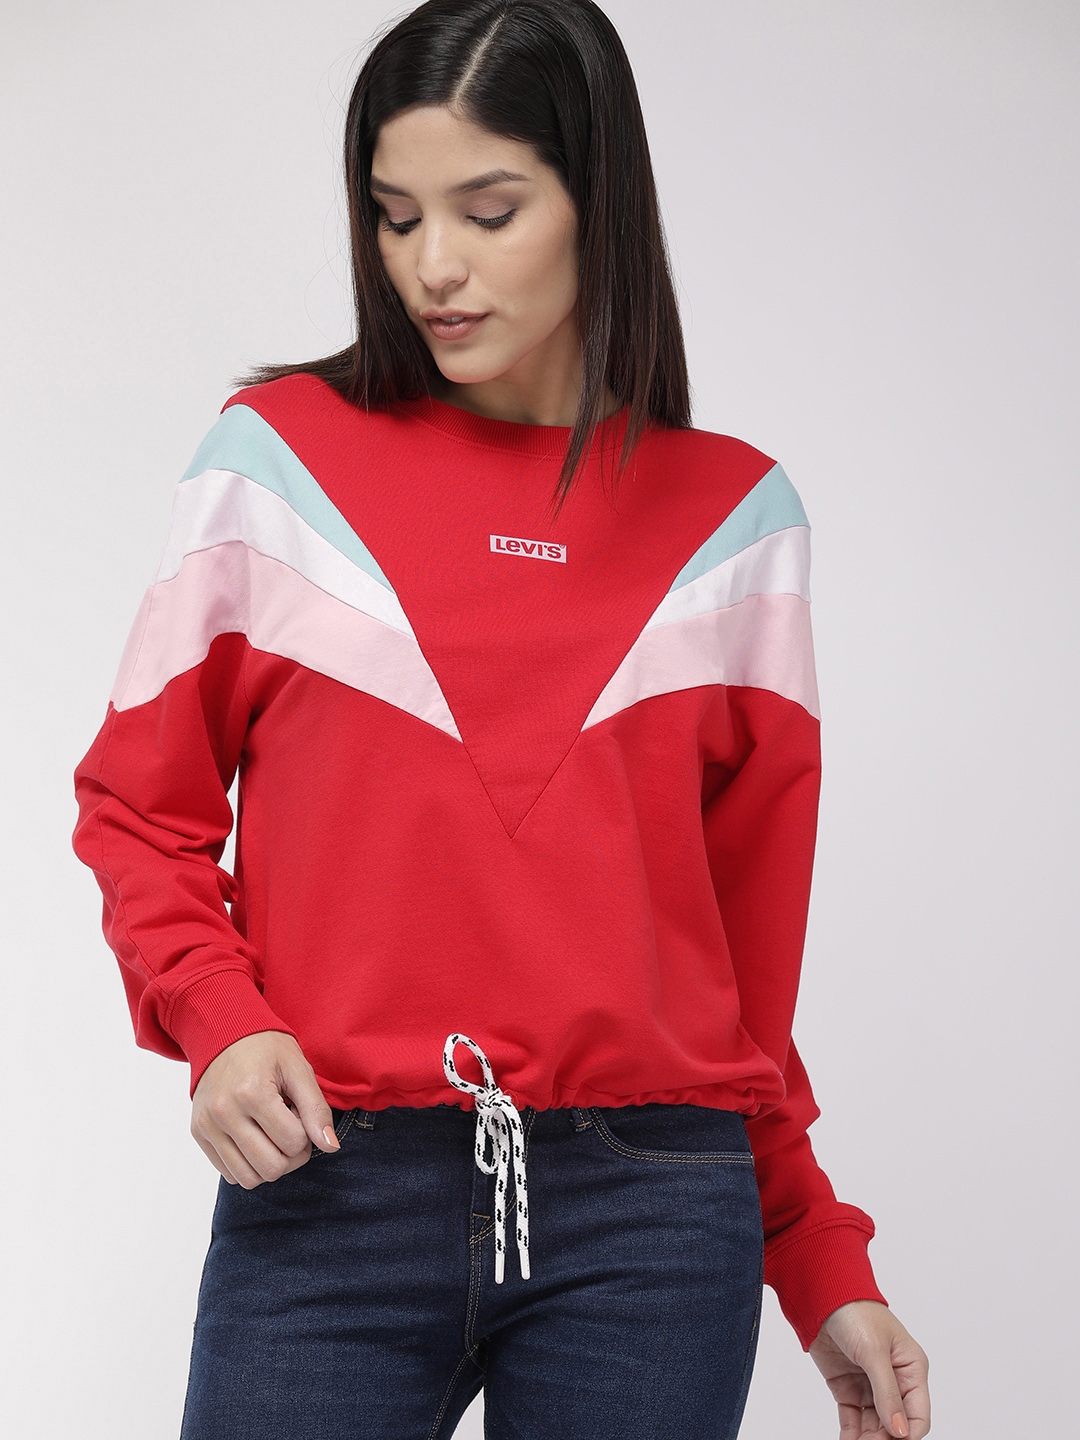 Buy Levis Women Red Solid Sweatshirt - Sweatshirts for Women 9905365 ...